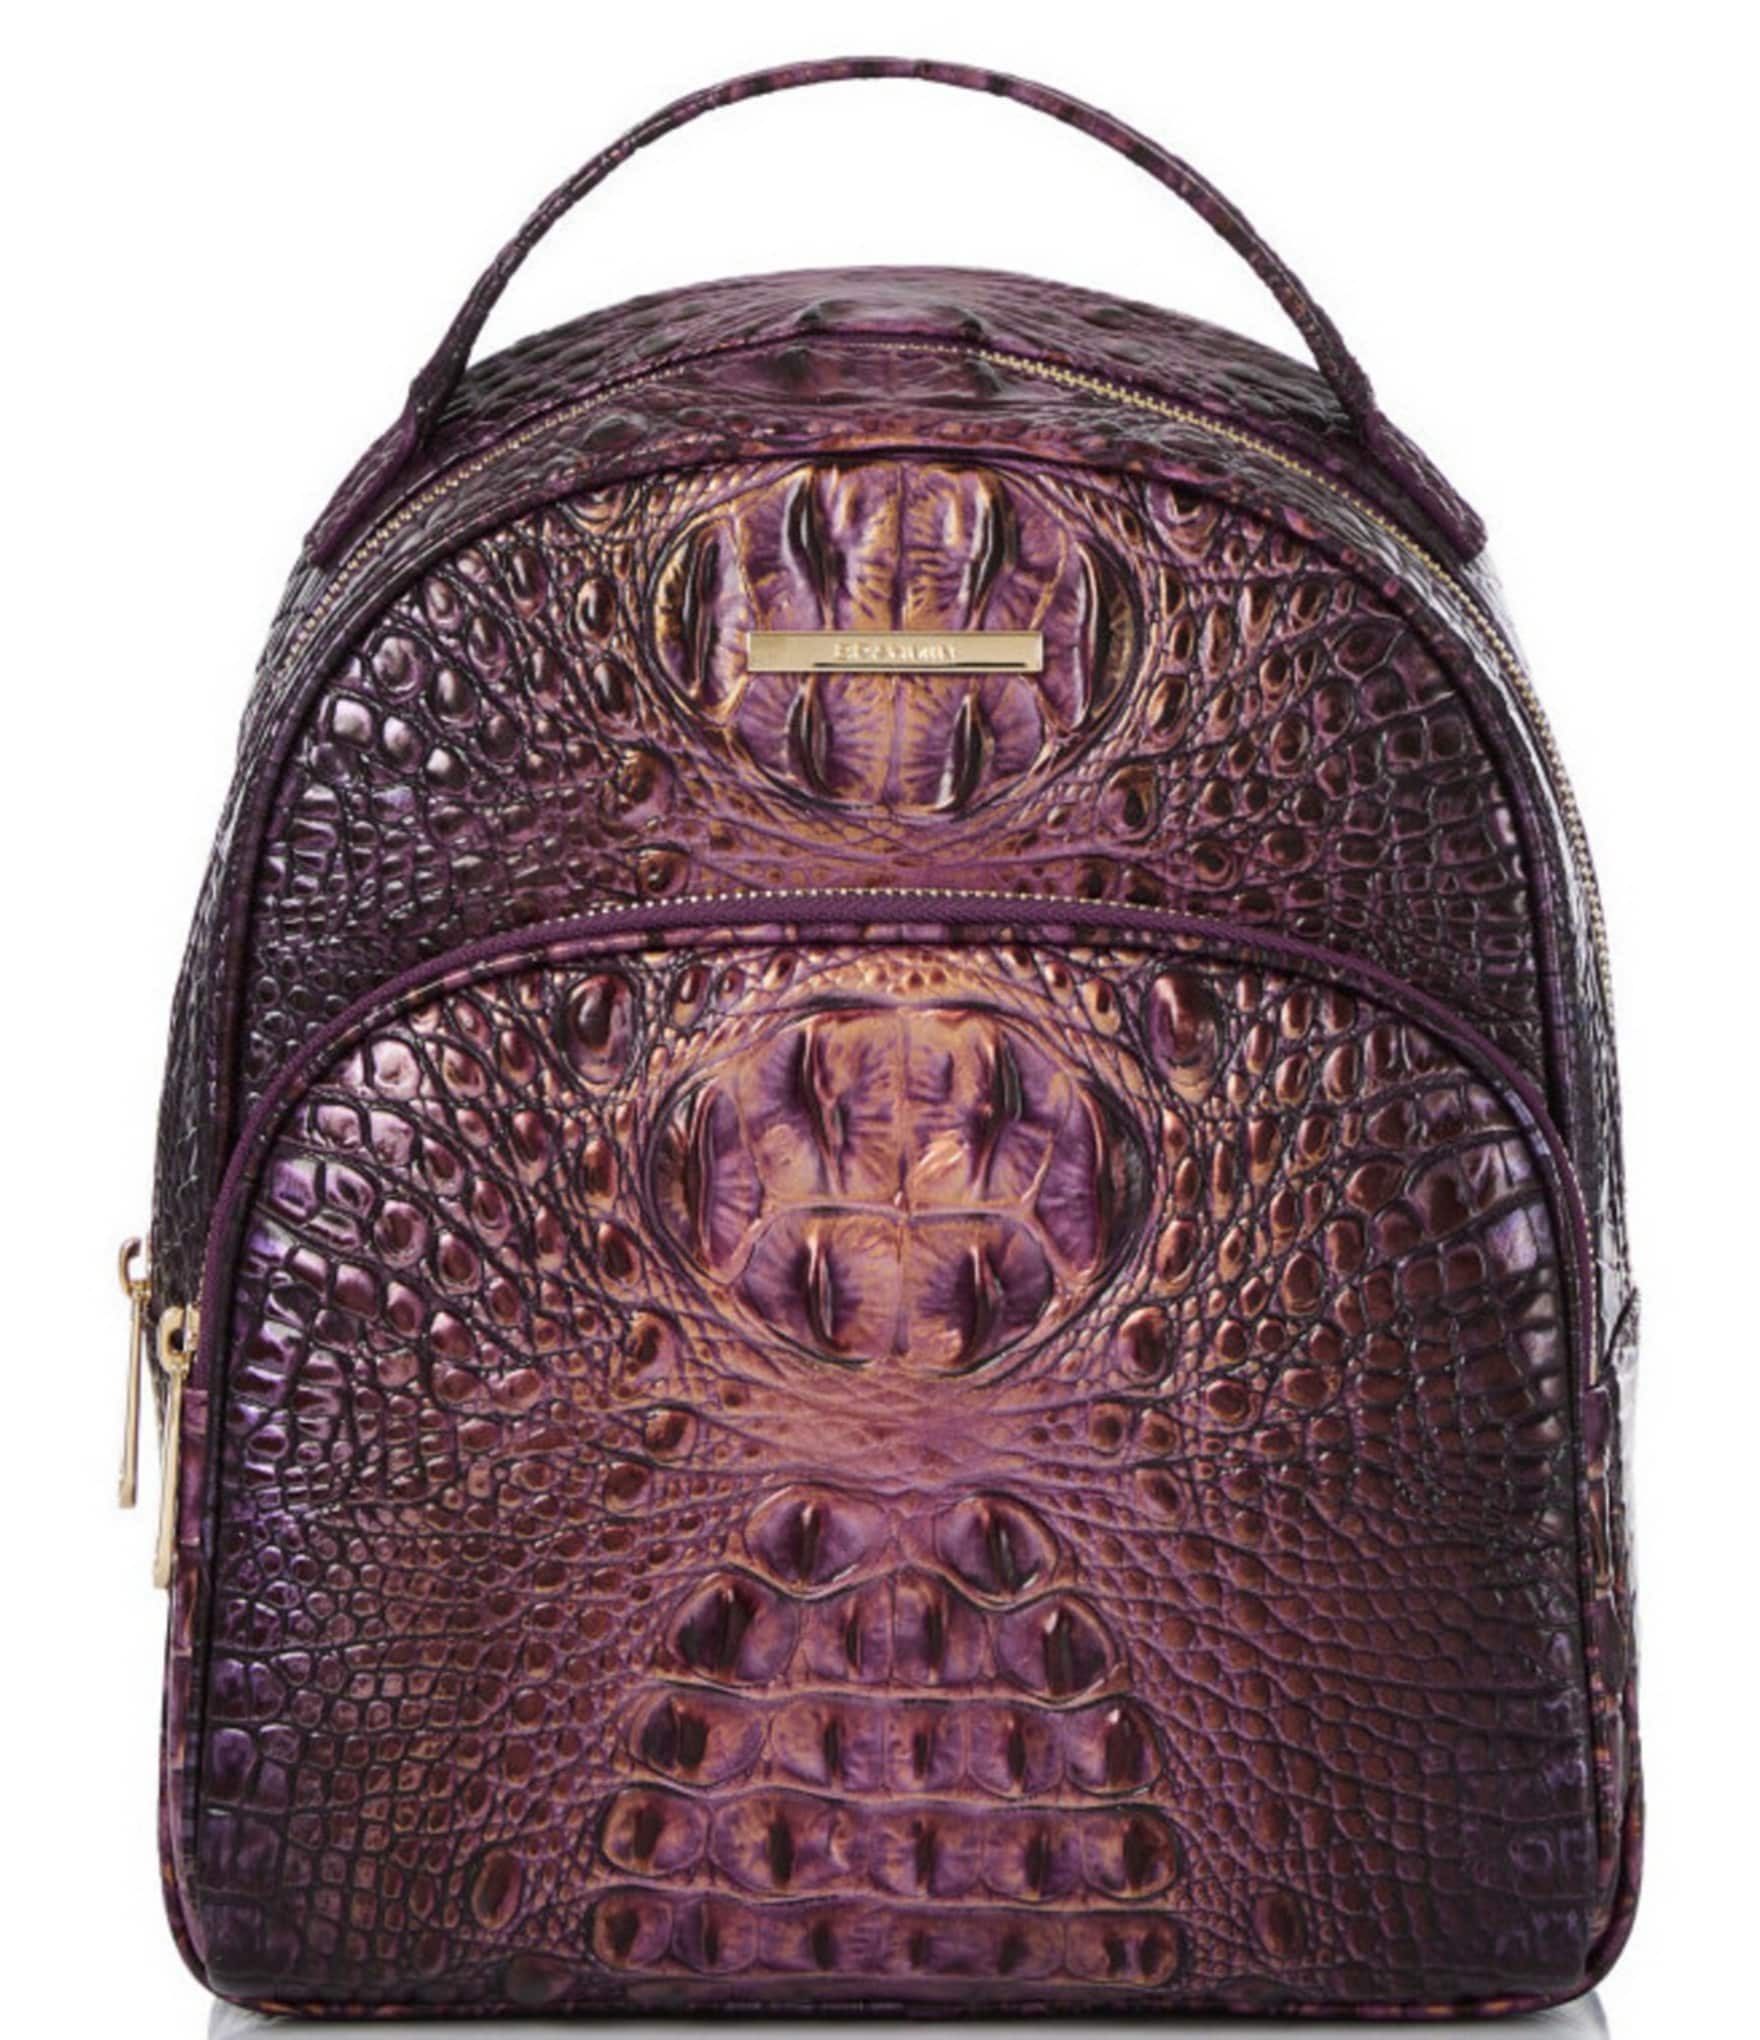 Georgina in Pecan Handbag Designer By Brahmin Size: Medium